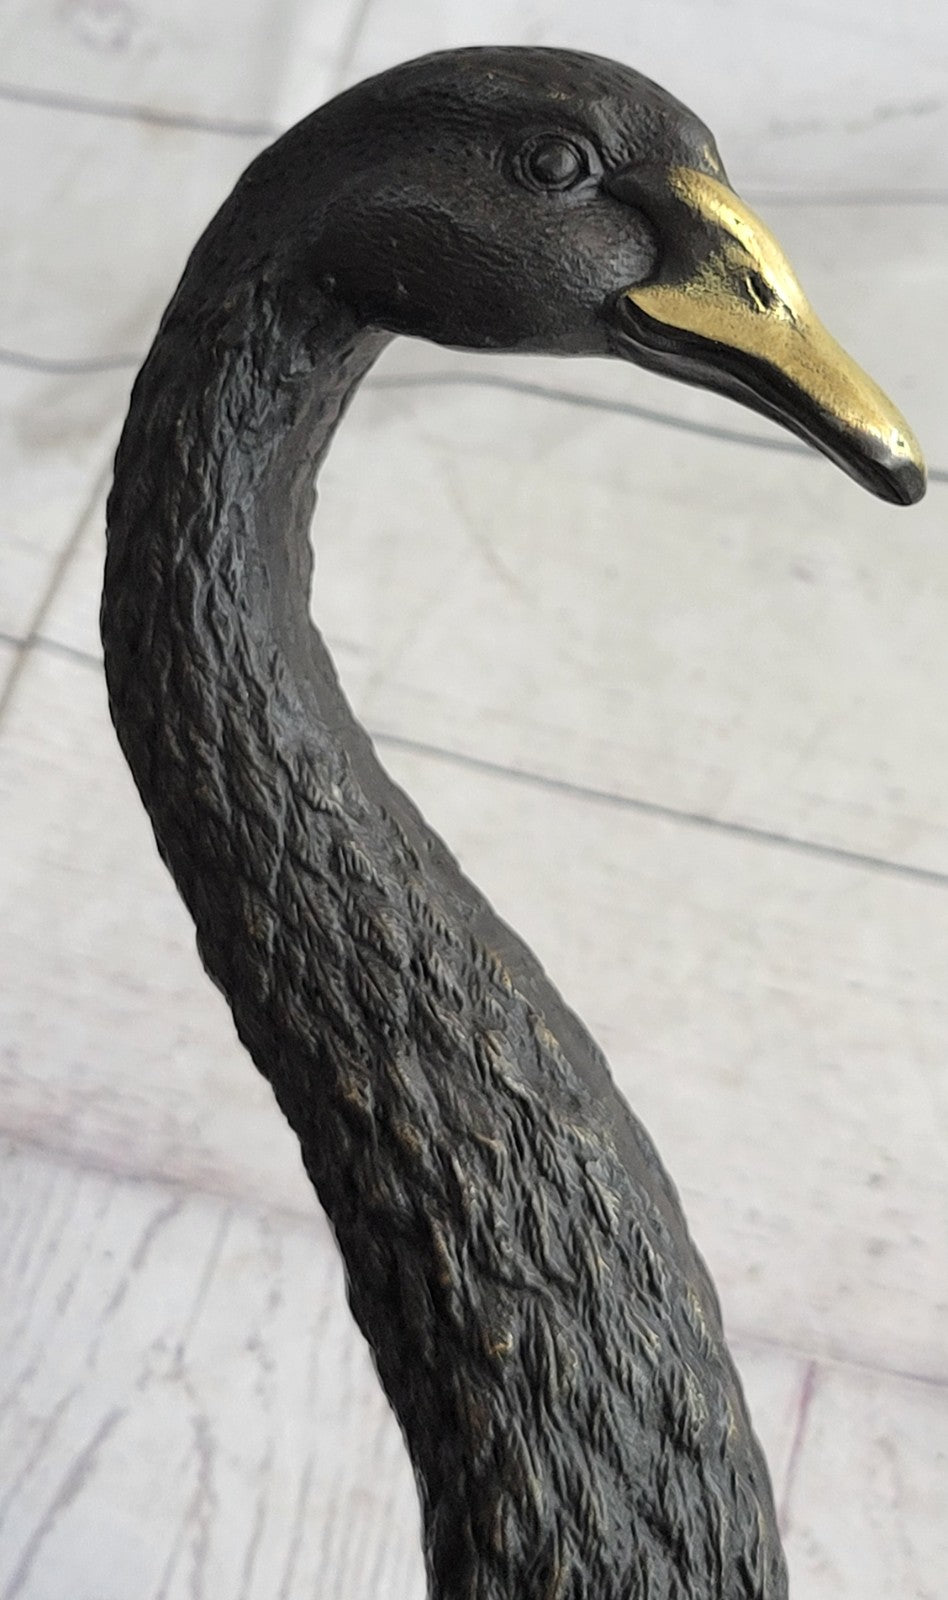 Swan Geese Backyard Pond Bird Lover Gift Art Bronze Marble Statue Sculpture